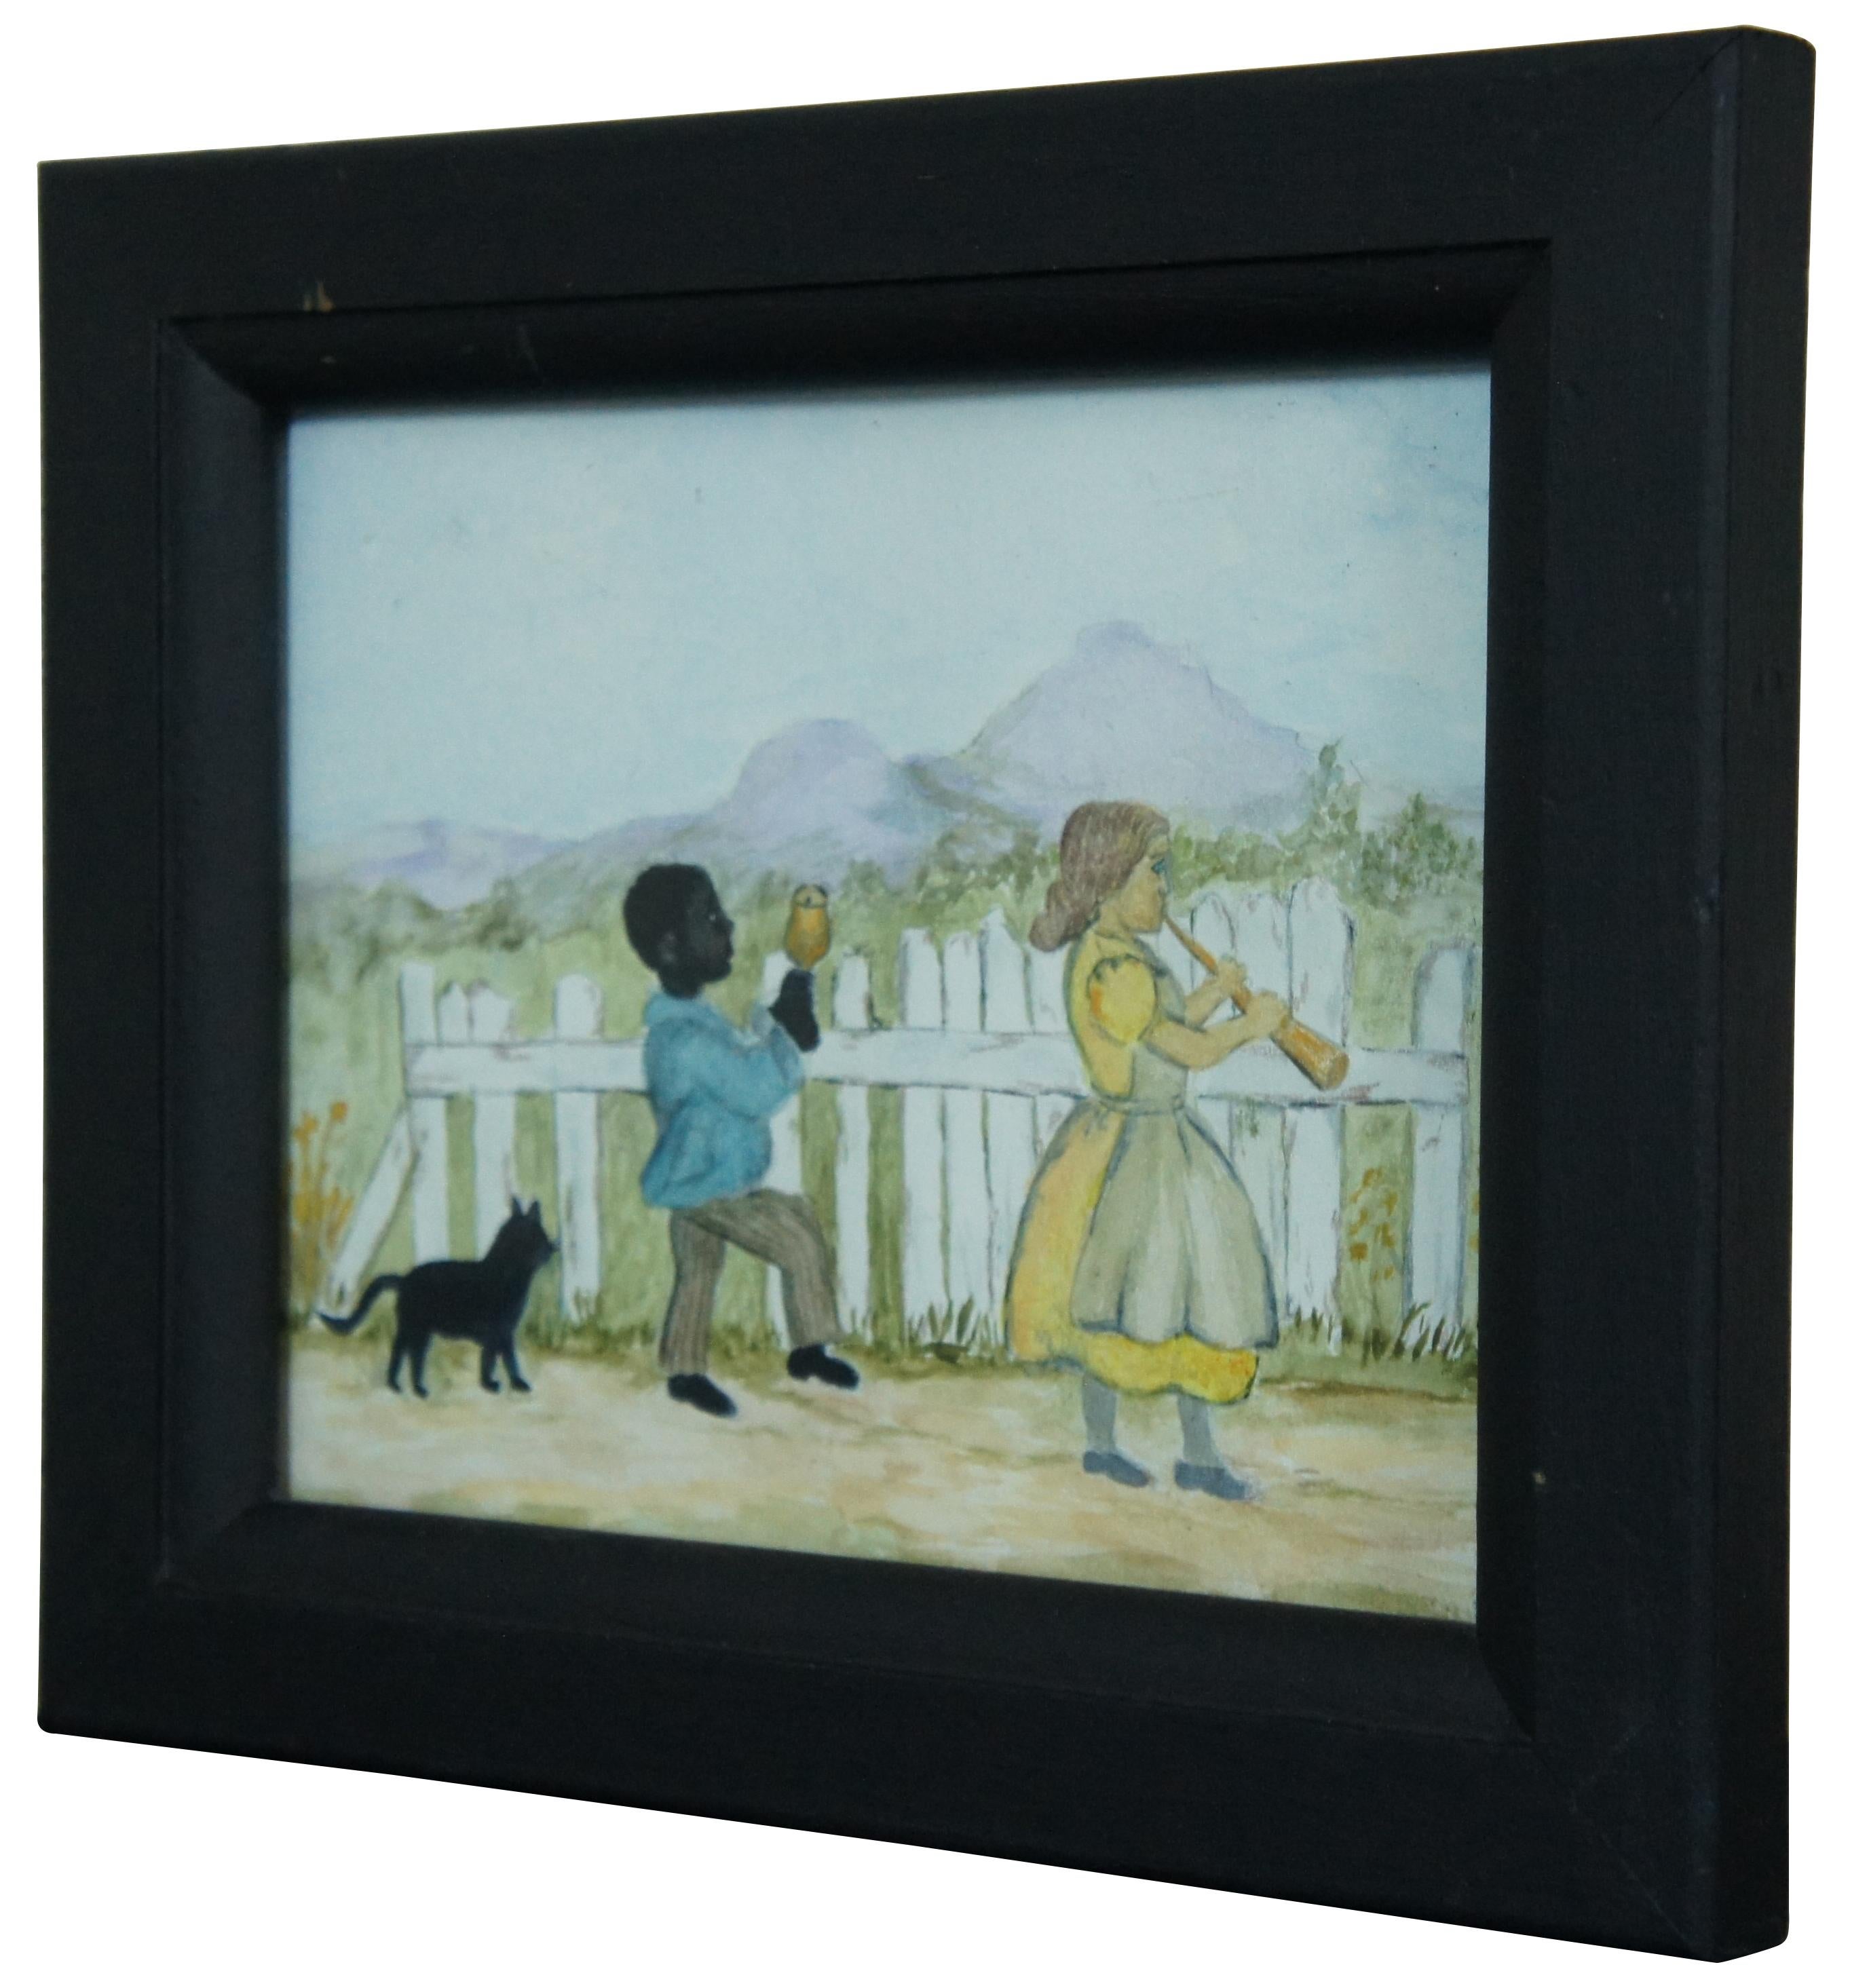 Aquarelle ancienne de style folklorique représentant un couple d'enfants avec des instruments et un chat descendant une route bordée d'une clôture blanche.

Mesures : 9.375